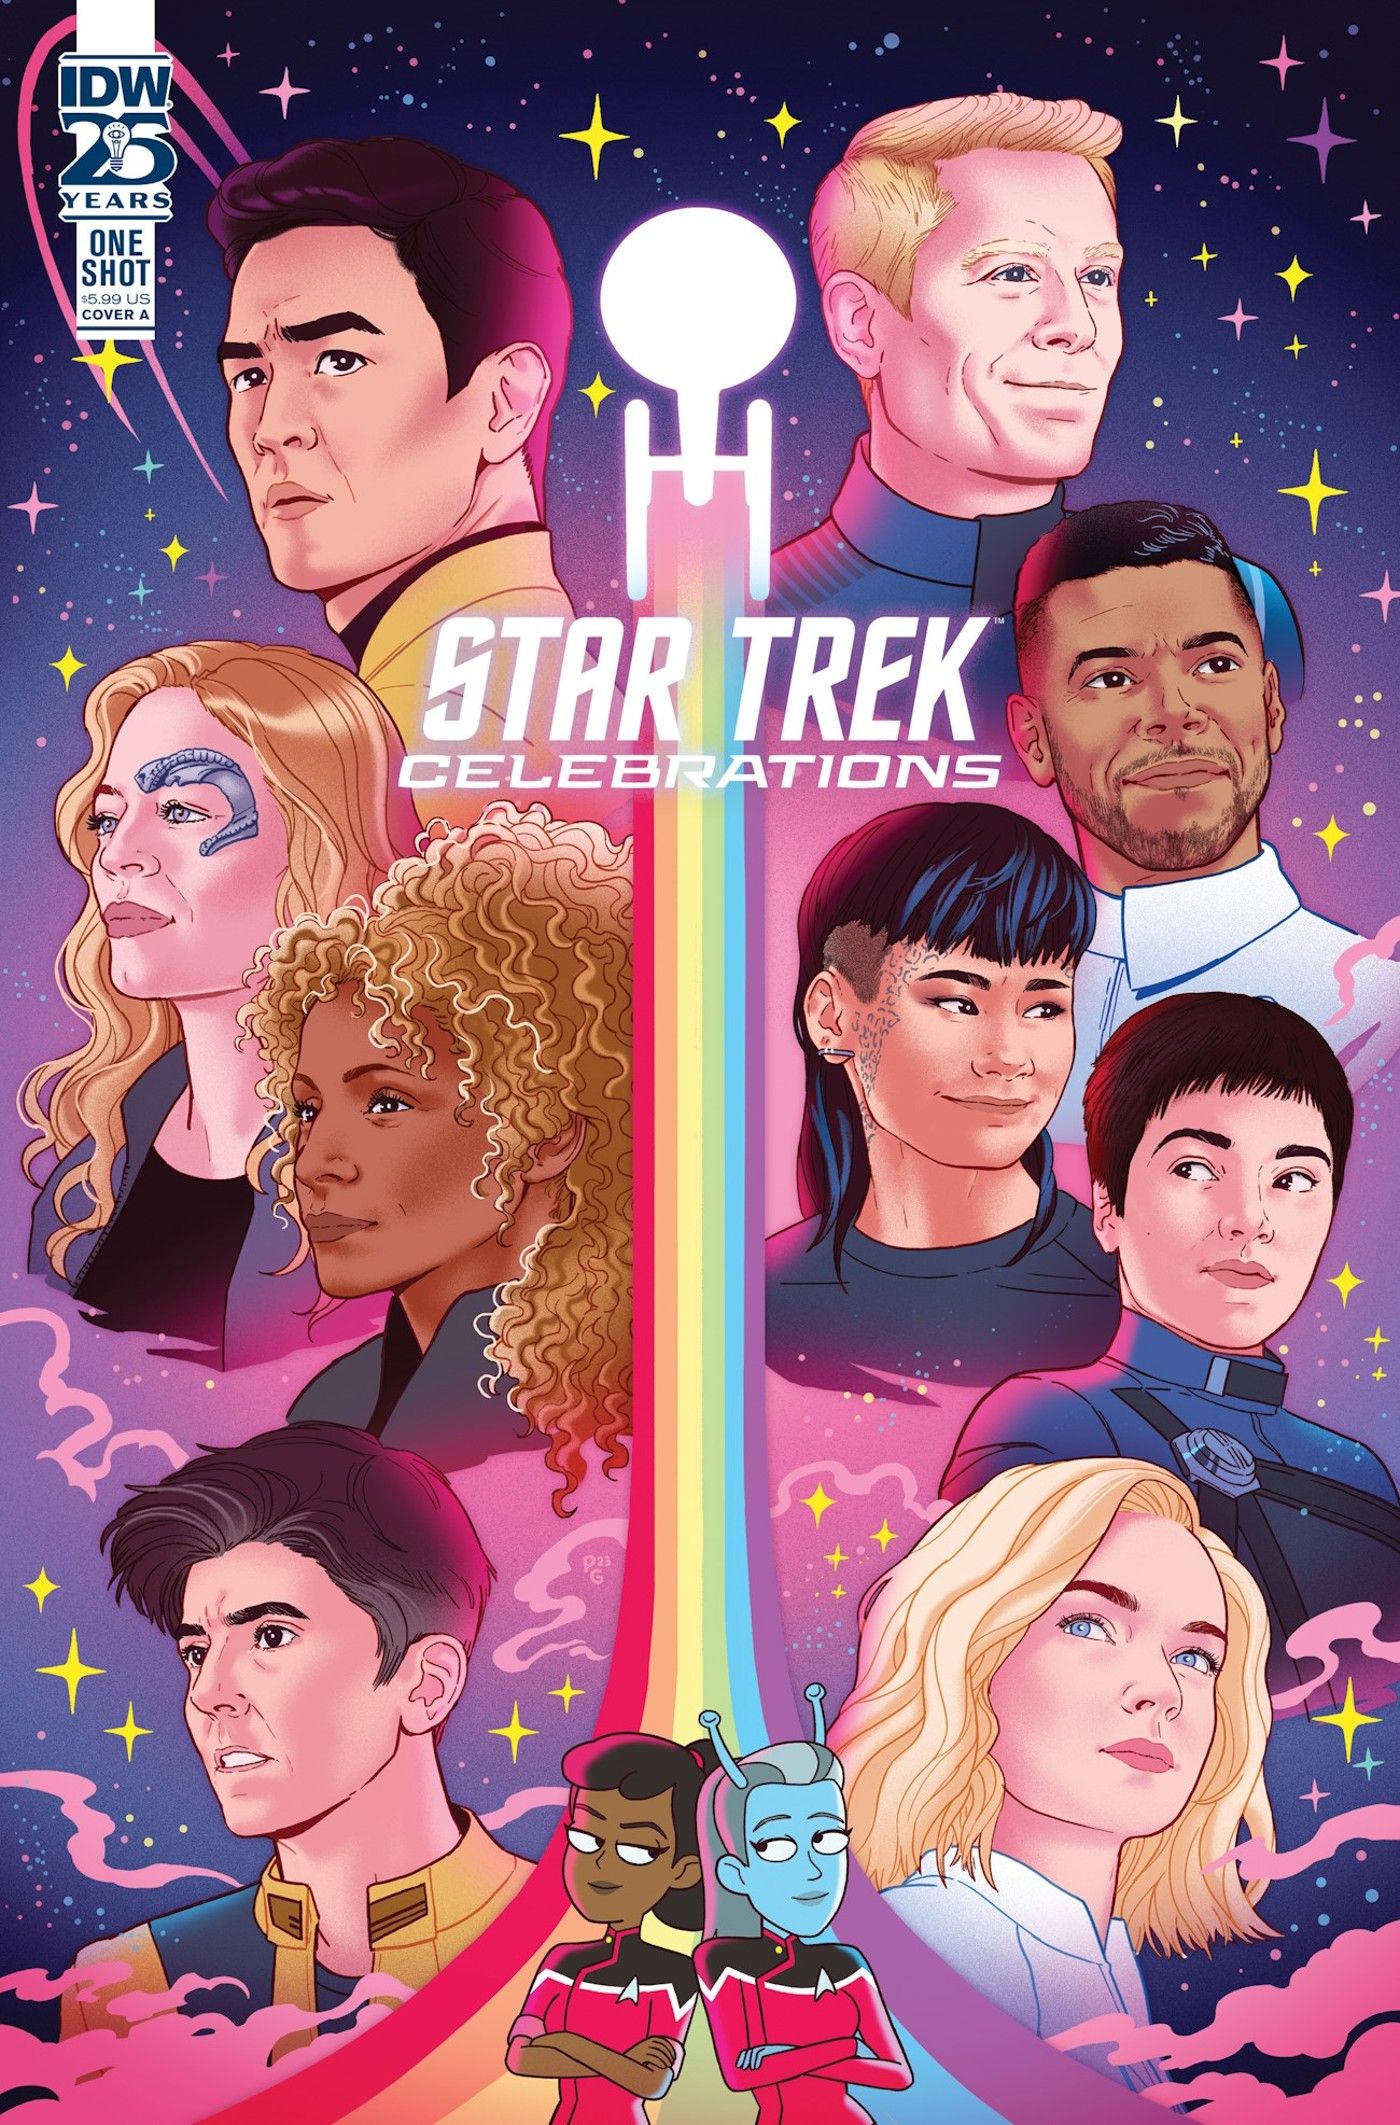 Arte apresentando os vários personagens LGBTQIA+ de Star Trek, incluindo Seven of Nine, Rafifi e Paul Stamets